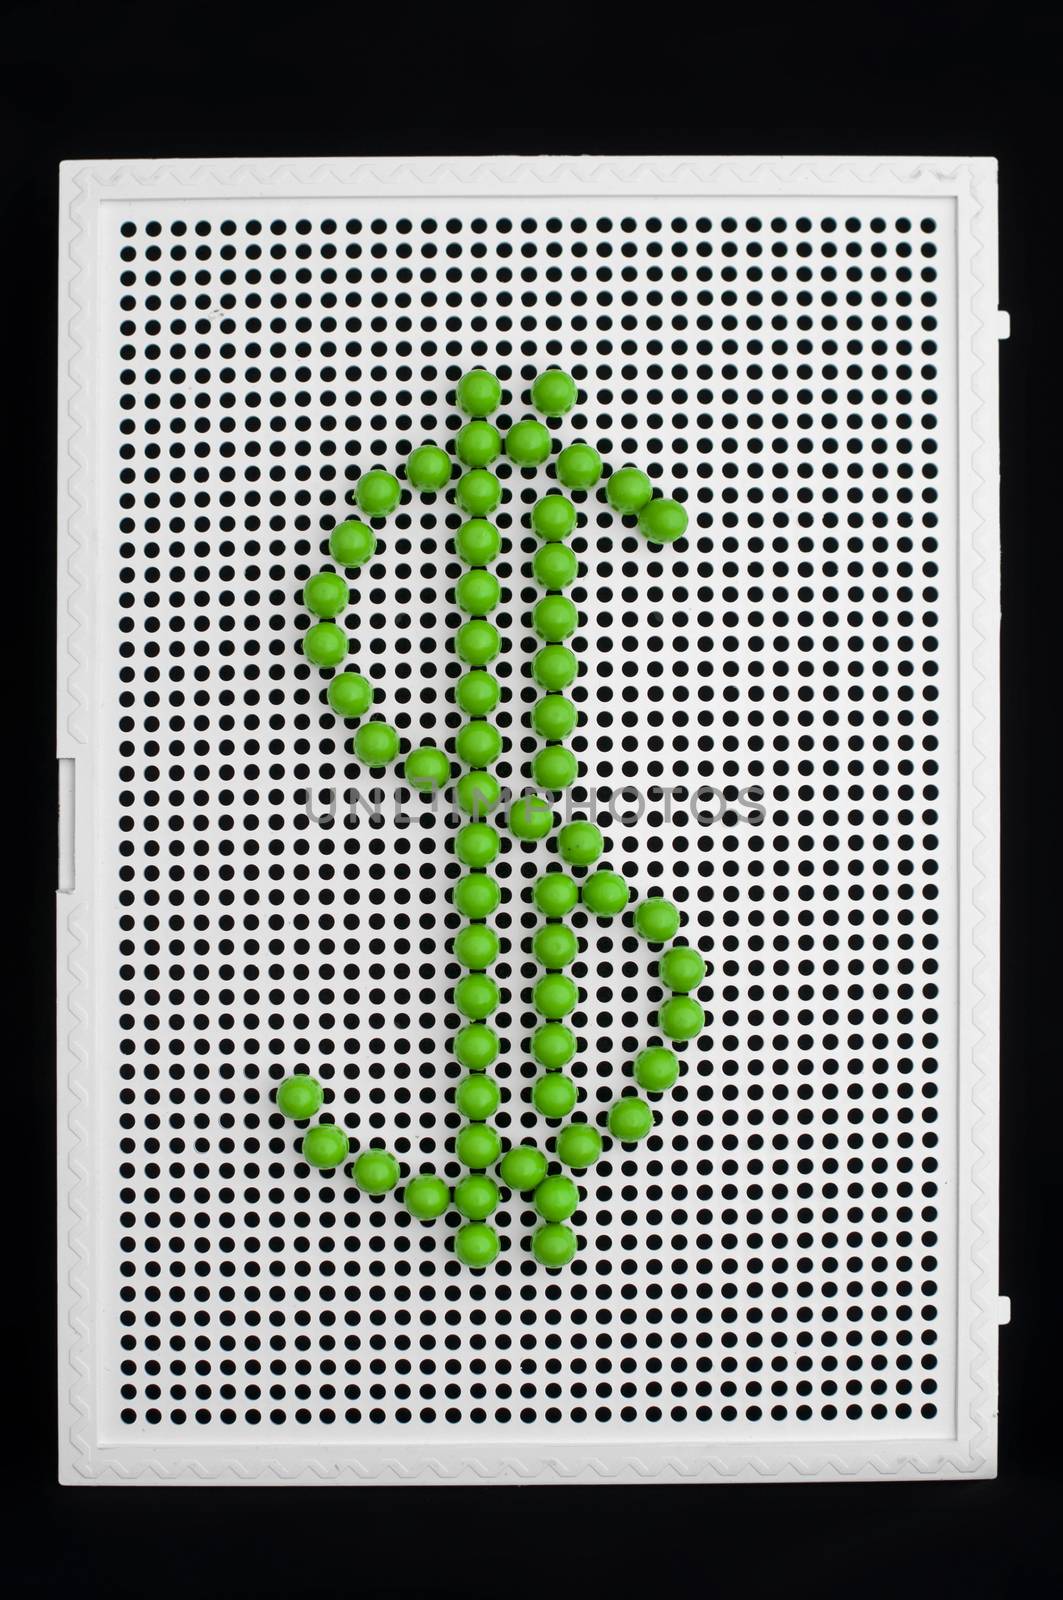 Dollar symbol on child mosaic by deyan_georgiev